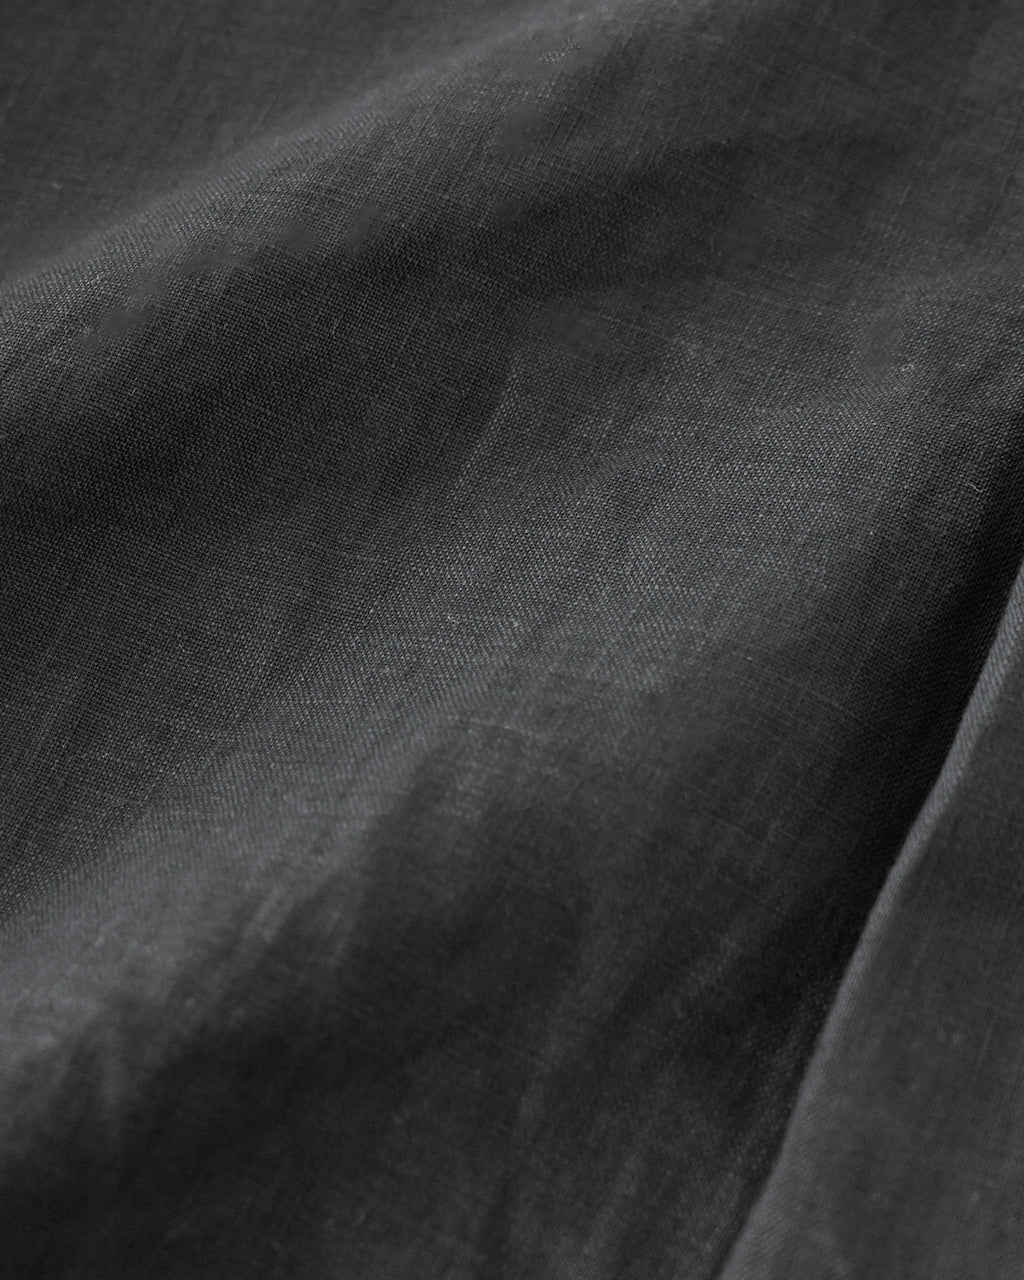 le glazik ル グラジック オープン カラー シャツ OPEN COLLAR SHIRT ショート丈 羽織   LG-B0258 KLS【送料無料】